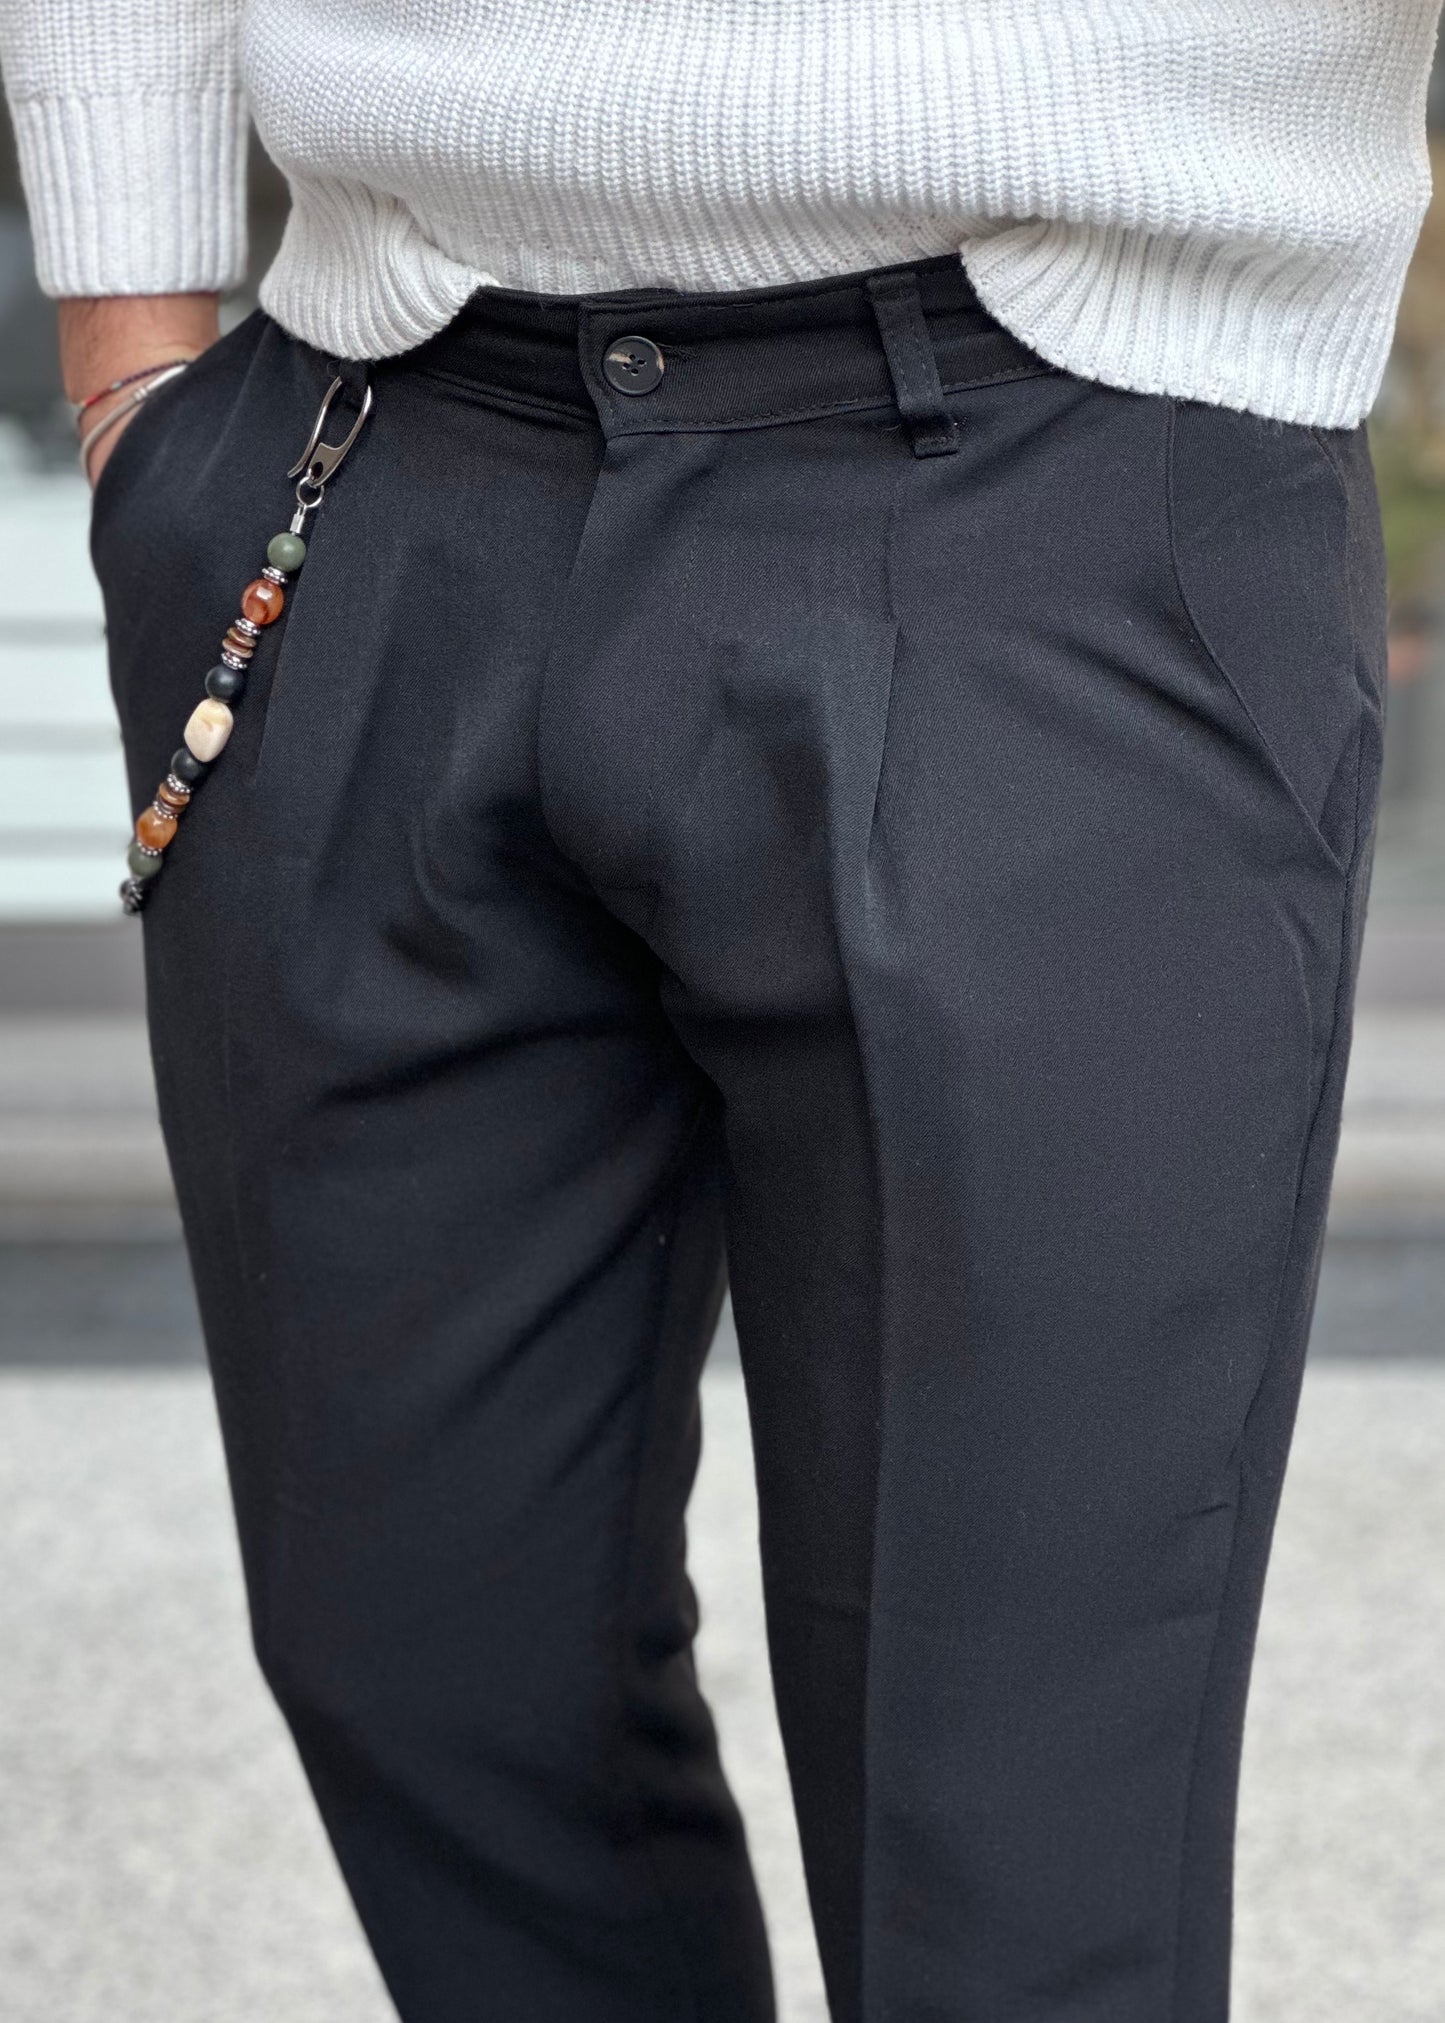 Pantalone Sartoriale Nero con Catena - Taglia XL